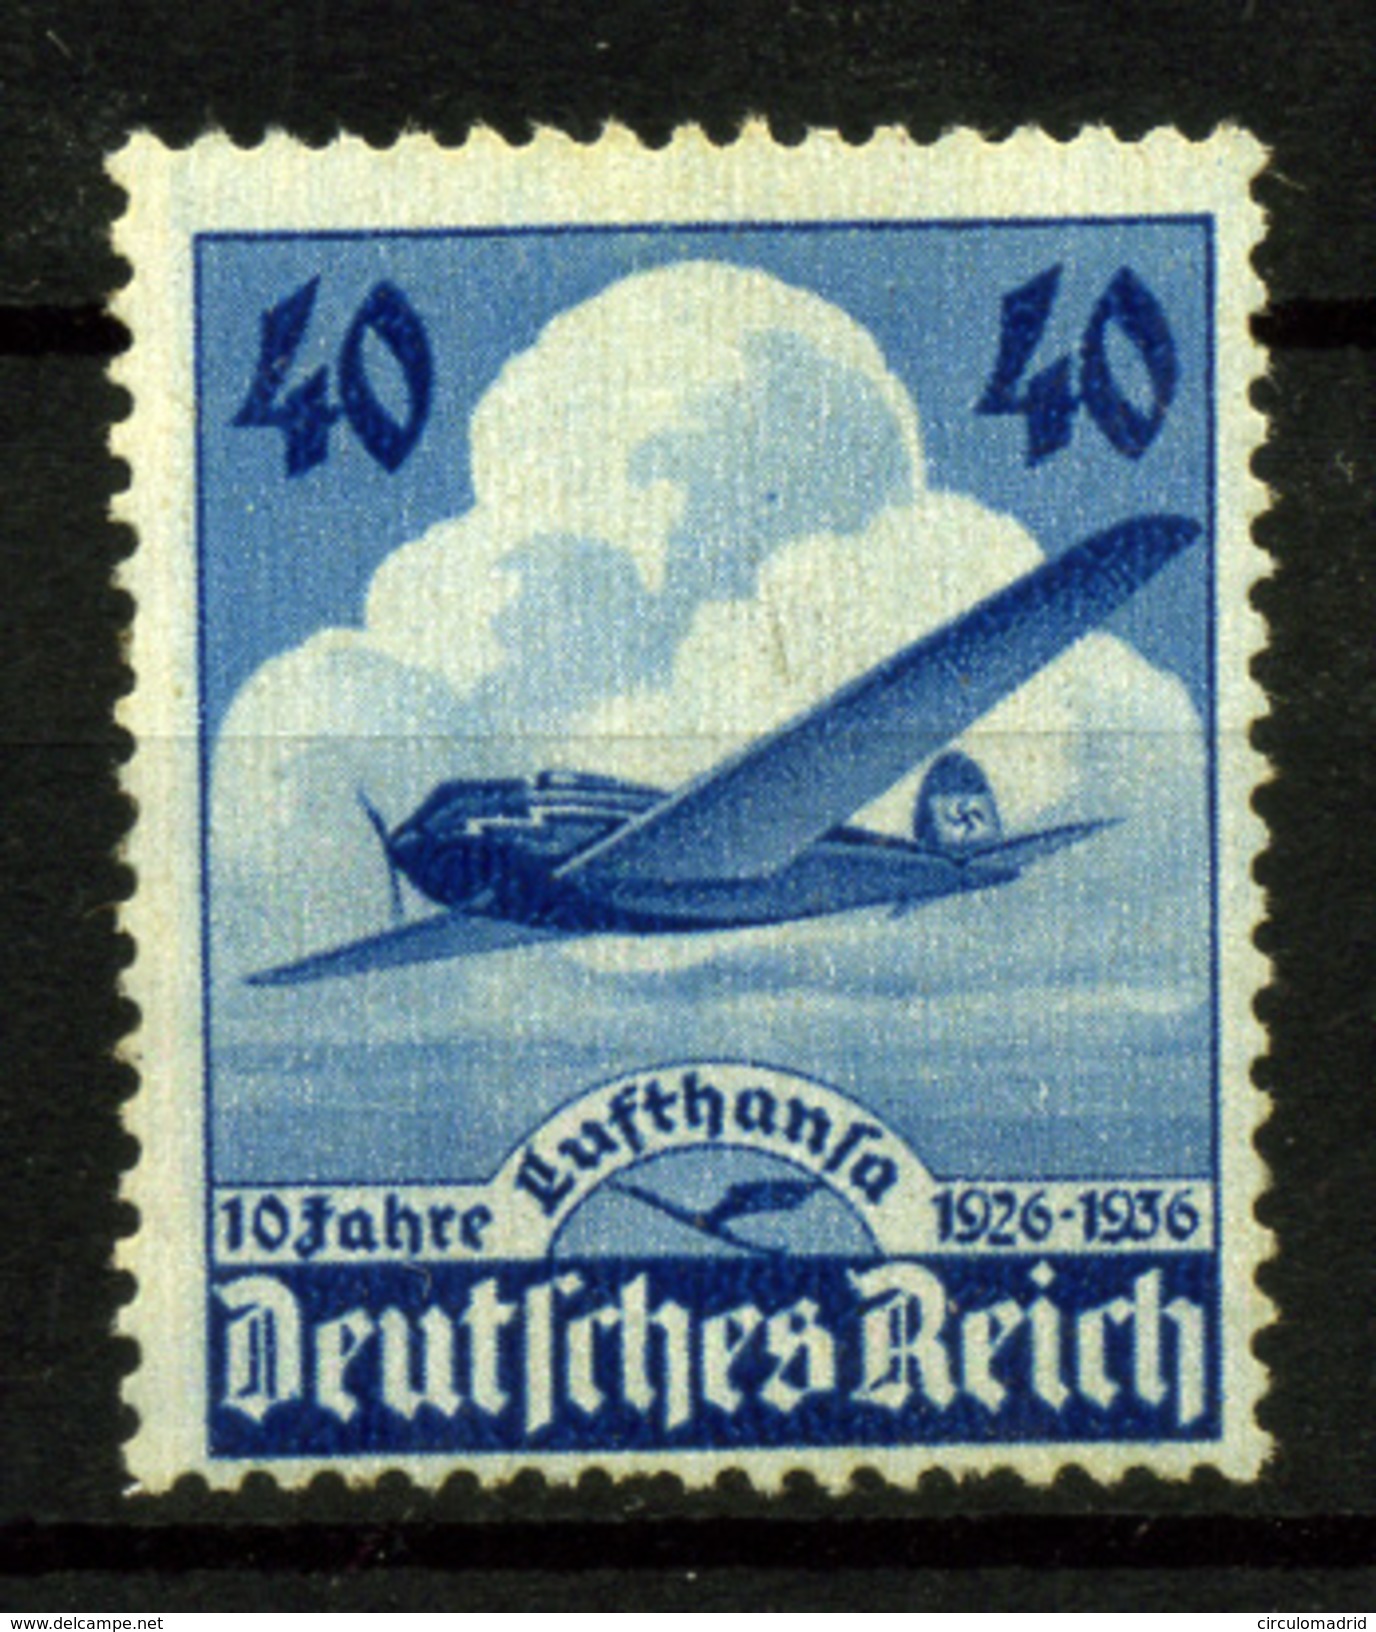 Alemania Imperio Nº 51 - Correo Aéreo & Zeppelin